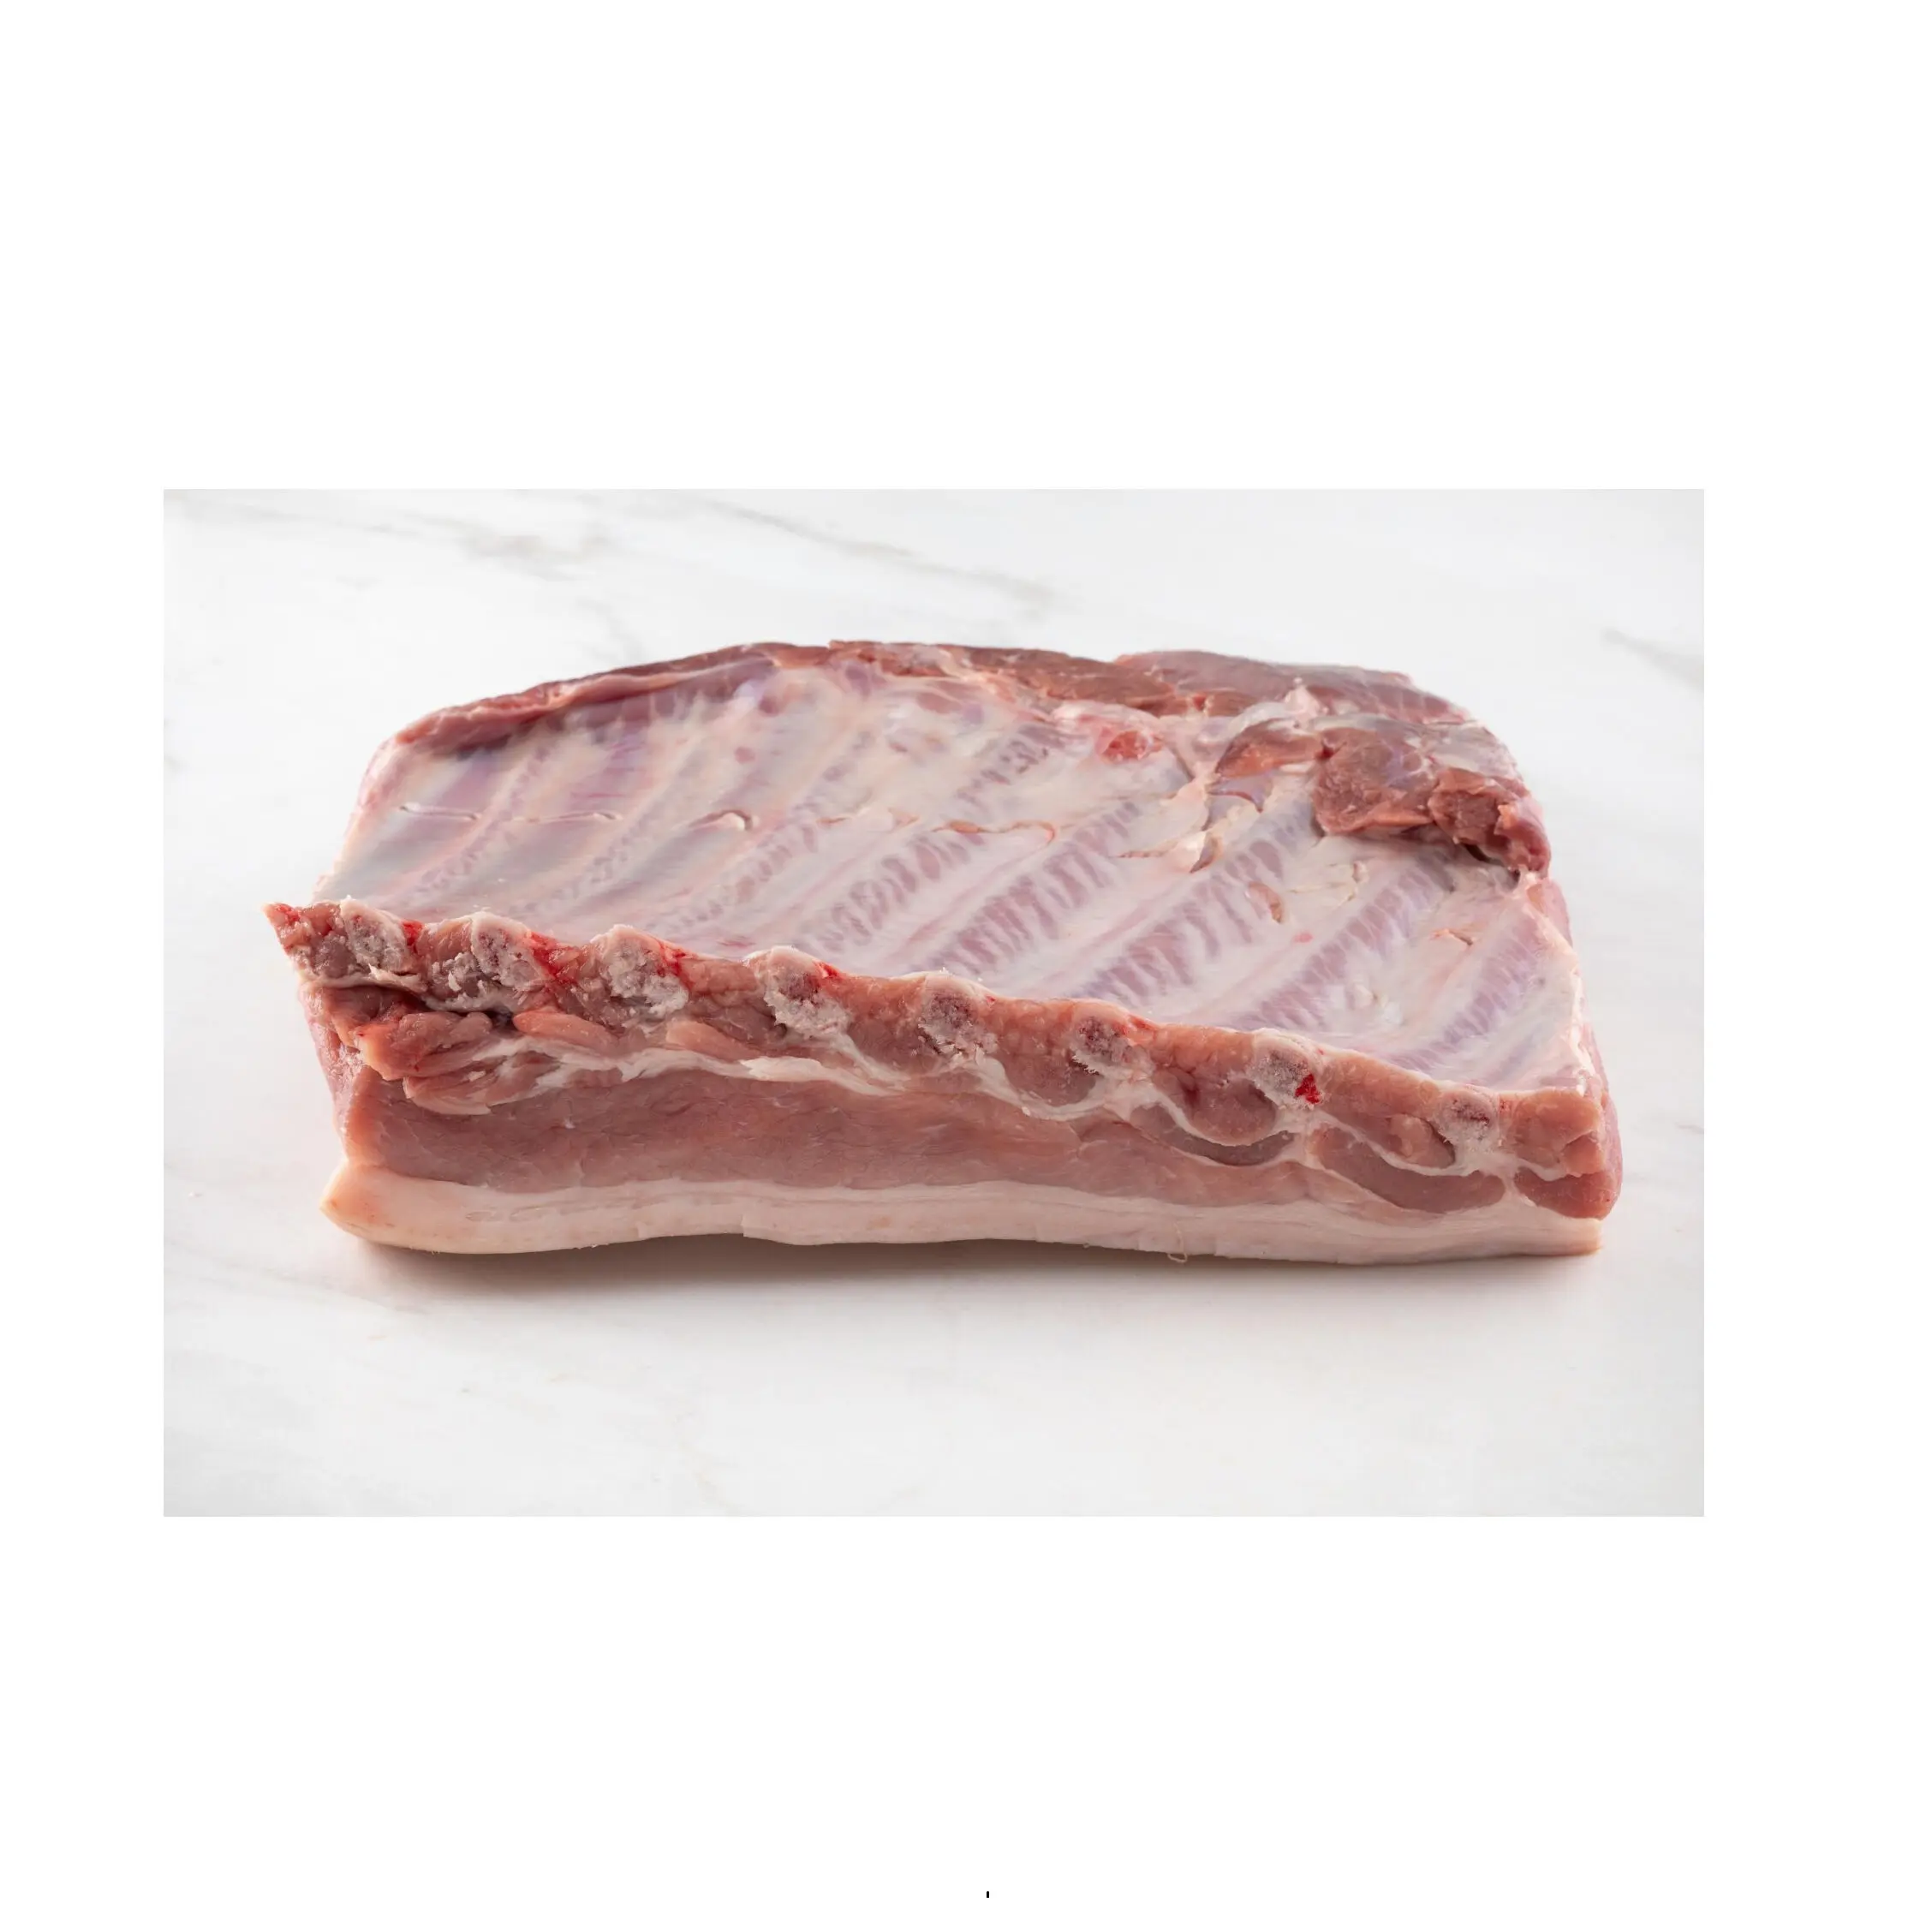 Онлайн покупка/заказ Высококачественная замороженная свиная грудинка с кожей по лучшей цене экспорта из Германии